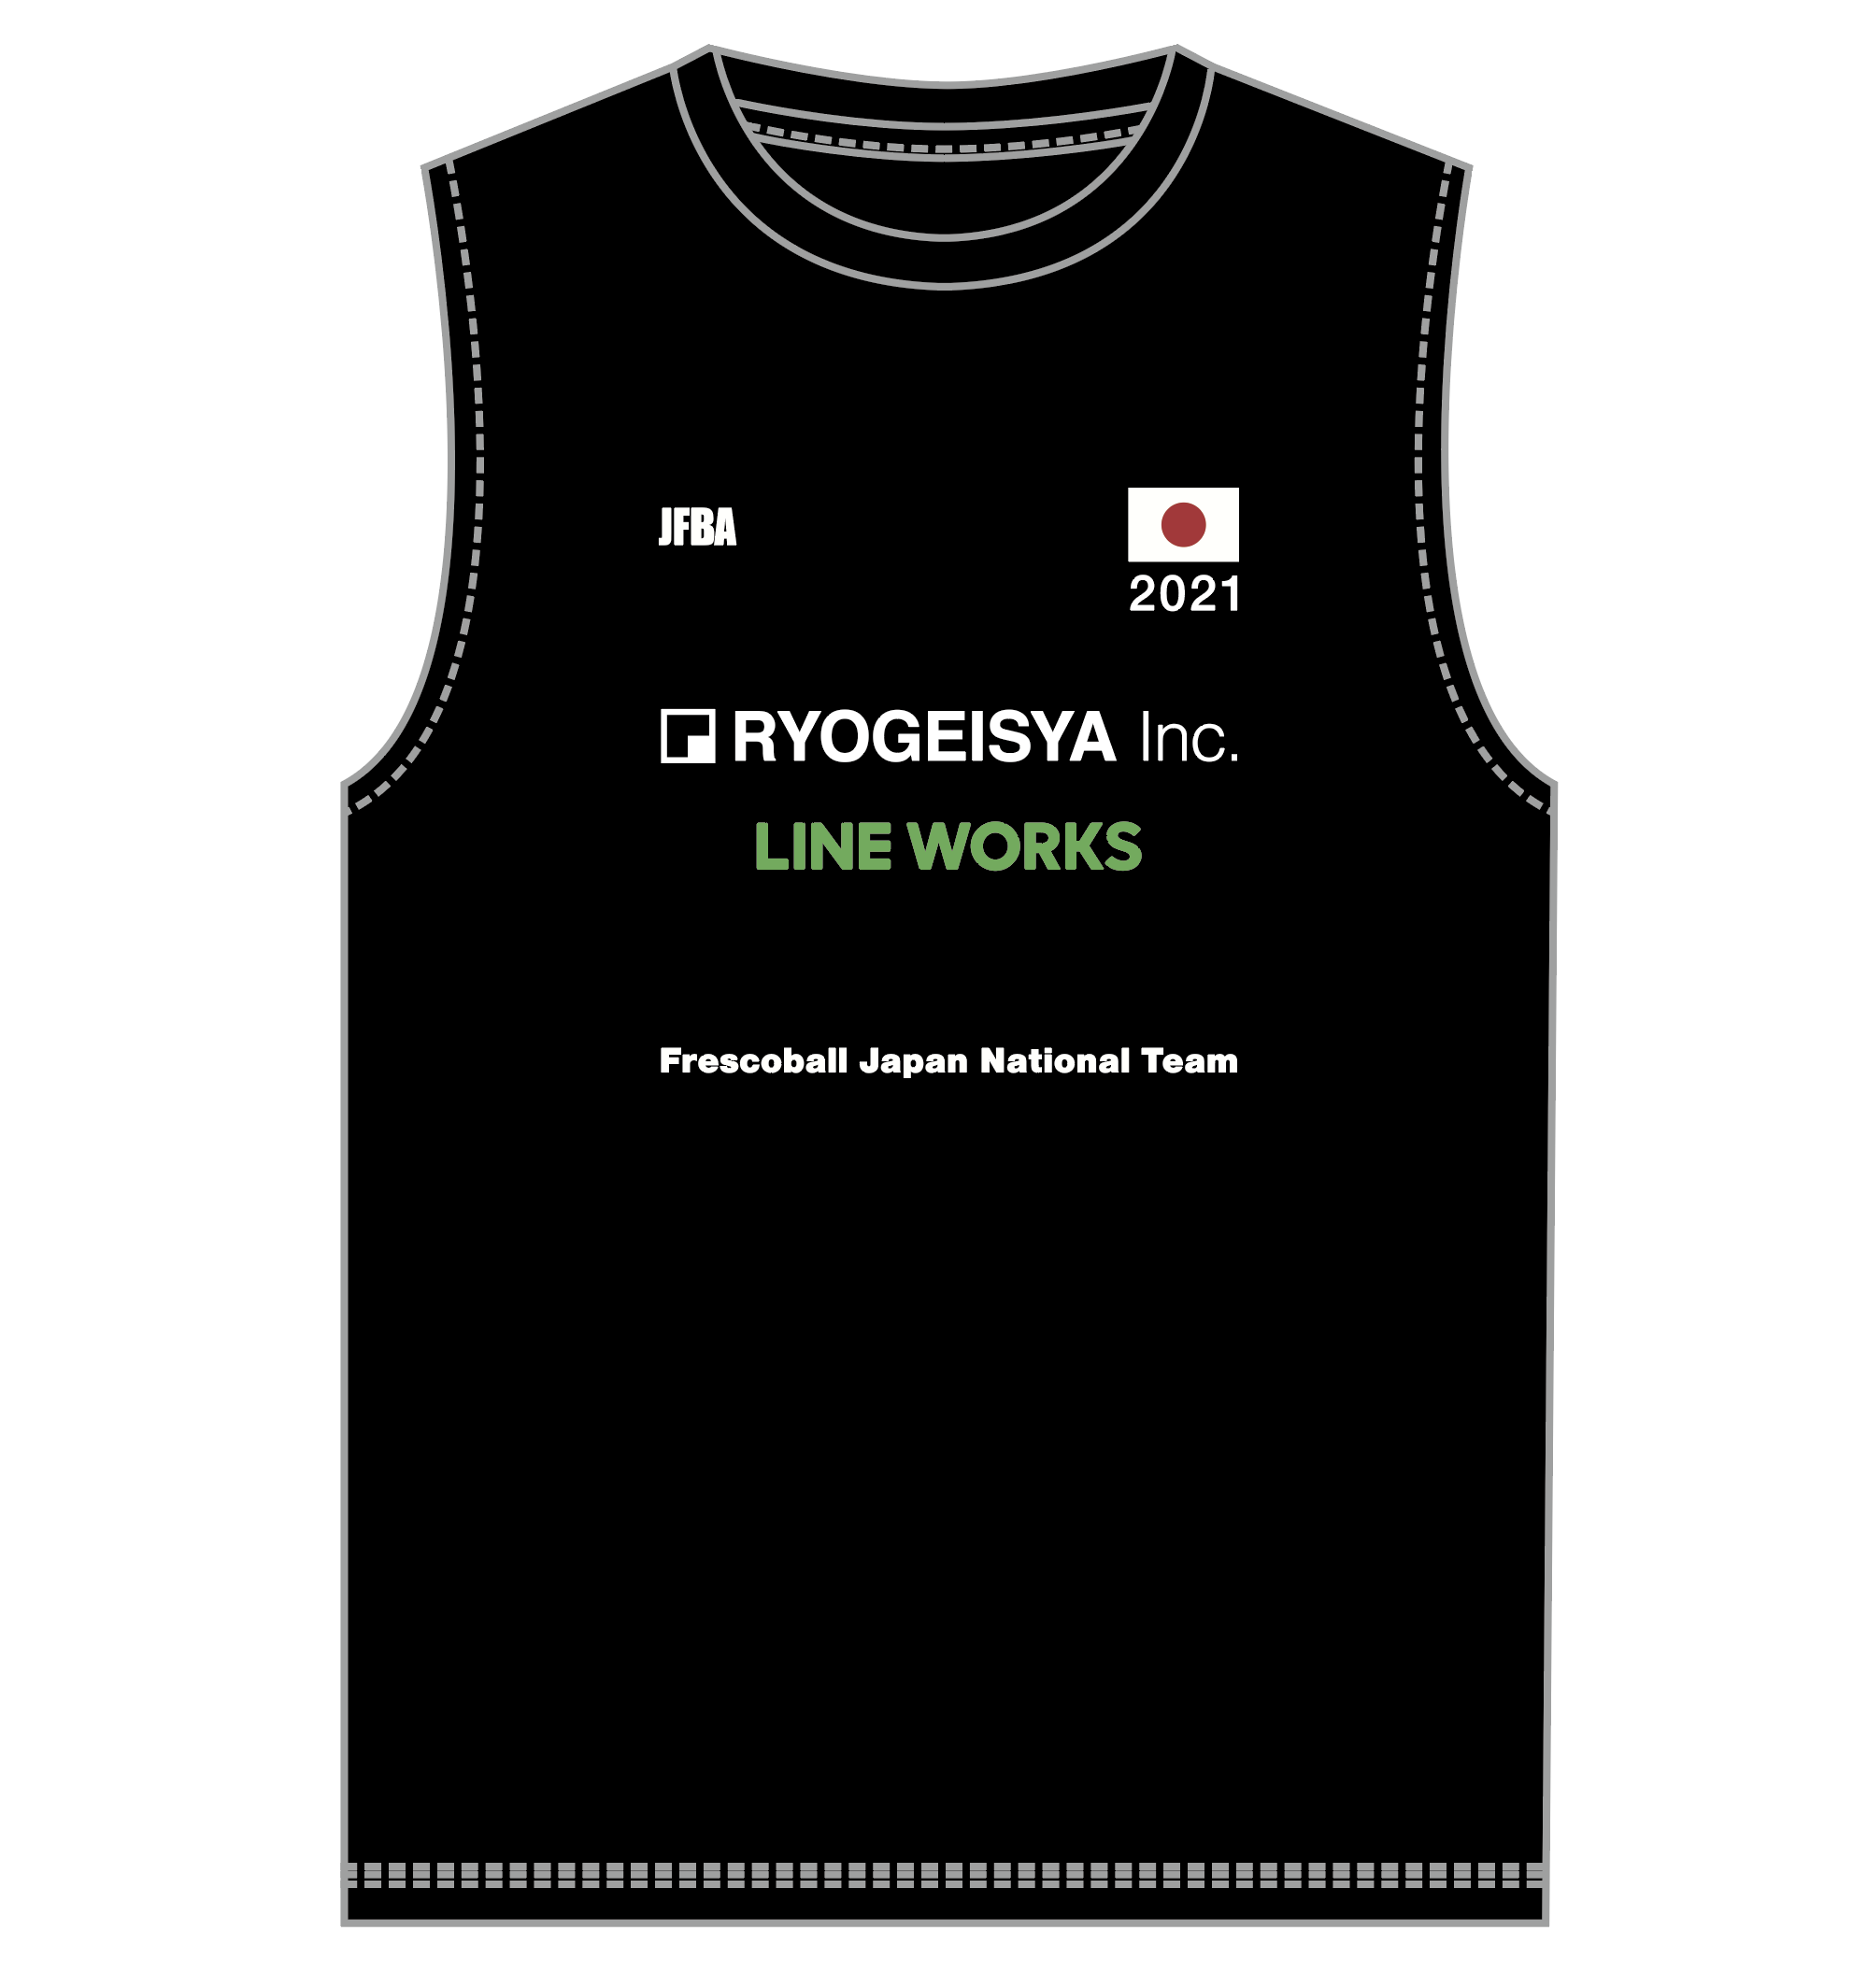 日本フレスコボール協会 Jfba が21年度の日本代表選手団オフィシャルスポンサーと日本代表ユニフォームデザインを発表 一般社団法人日本フレスコボール協会のプレスリリース